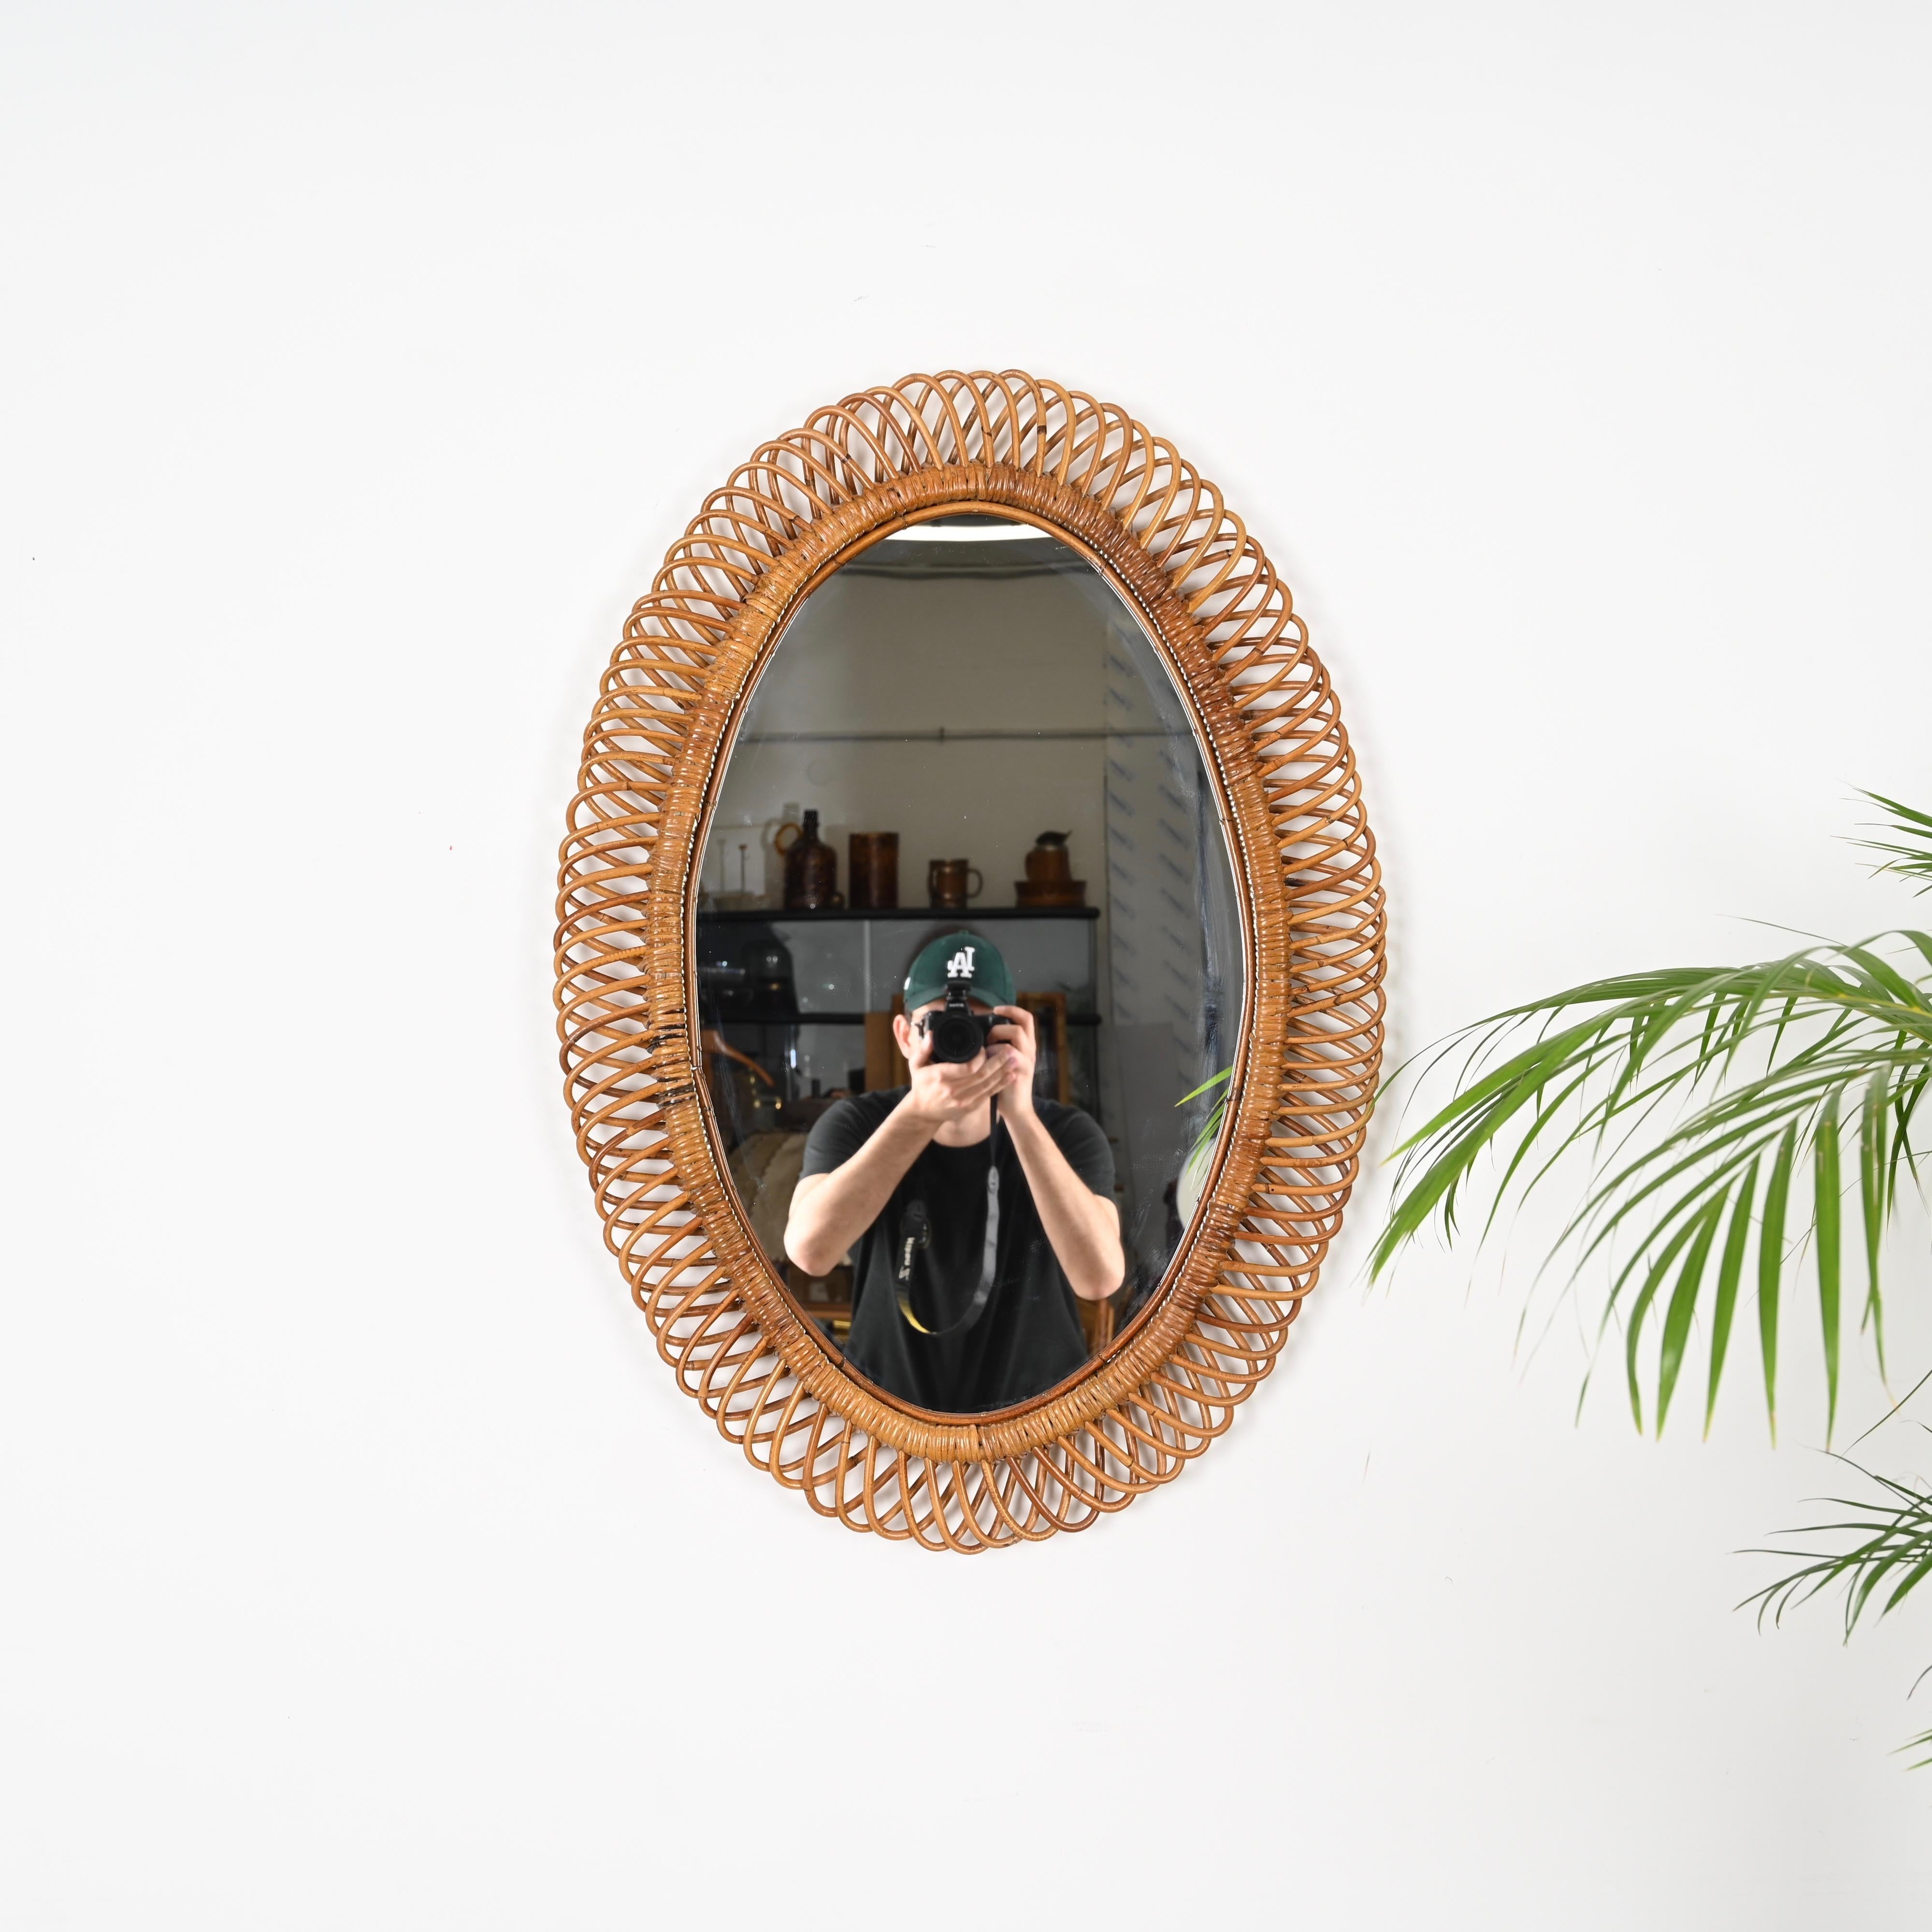 Großer ovaler Spiegel aus der Mitte des Jahrhunderts aus gebogenem Rattan, Bambus und Weide. Dieses prächtige Stück wurde von Franco Albini entworfen und in den 1960er Jahren in Italien hergestellt.

Dieser hübsche ovale Spiegel hat einen eleganten